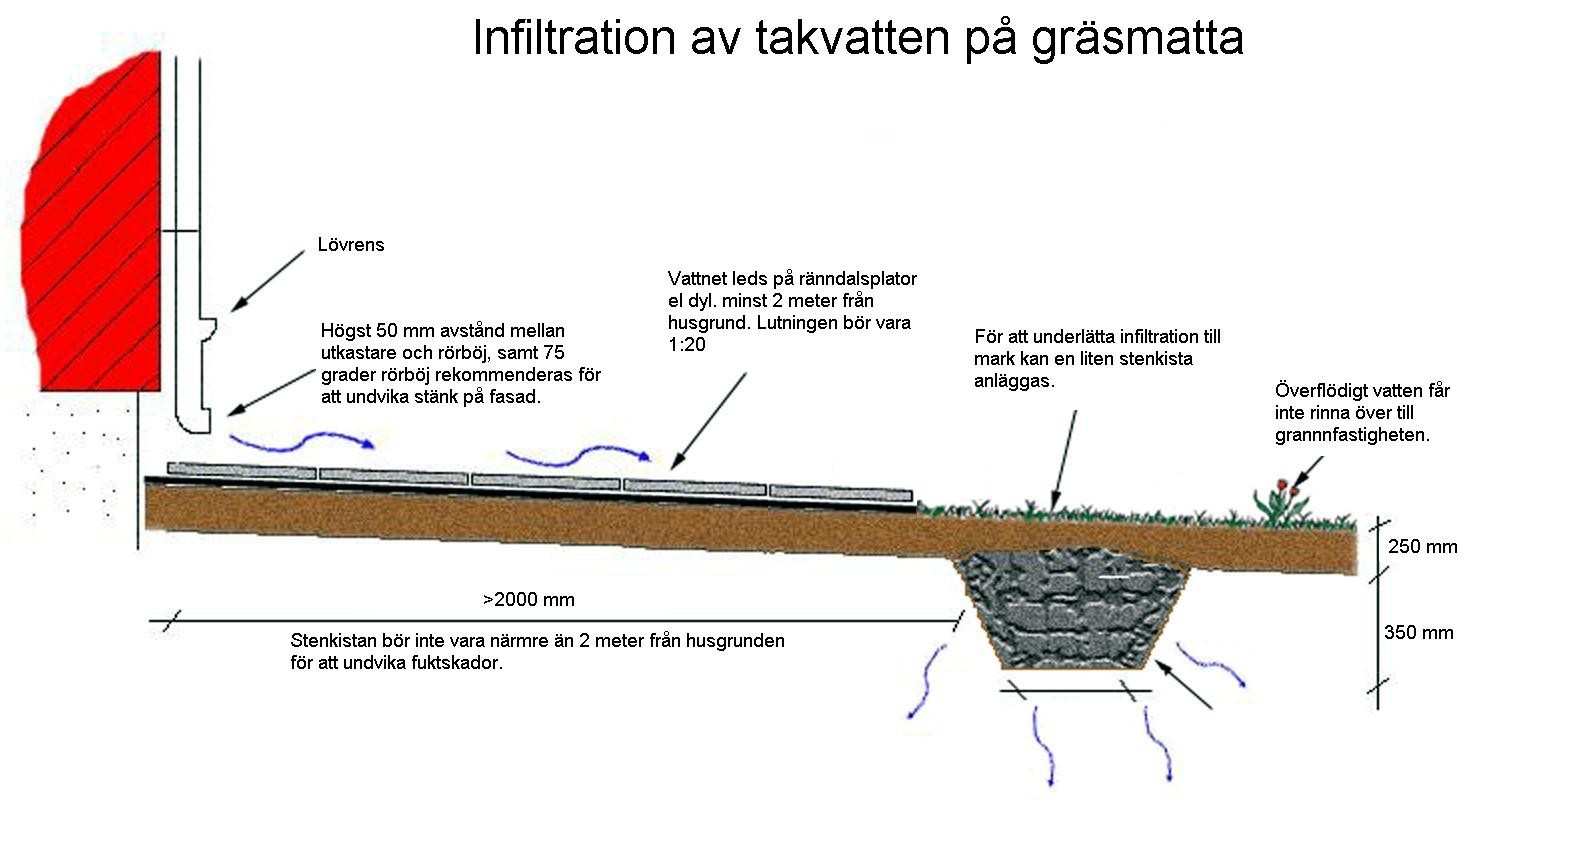 Viktigt att tänka på vid infiltration på gräsyta är att åtgärder vidtas för att kunna ta hand om överskottsvatten som inte infiltrerar, t.ex. vid större nederbördsmängder.